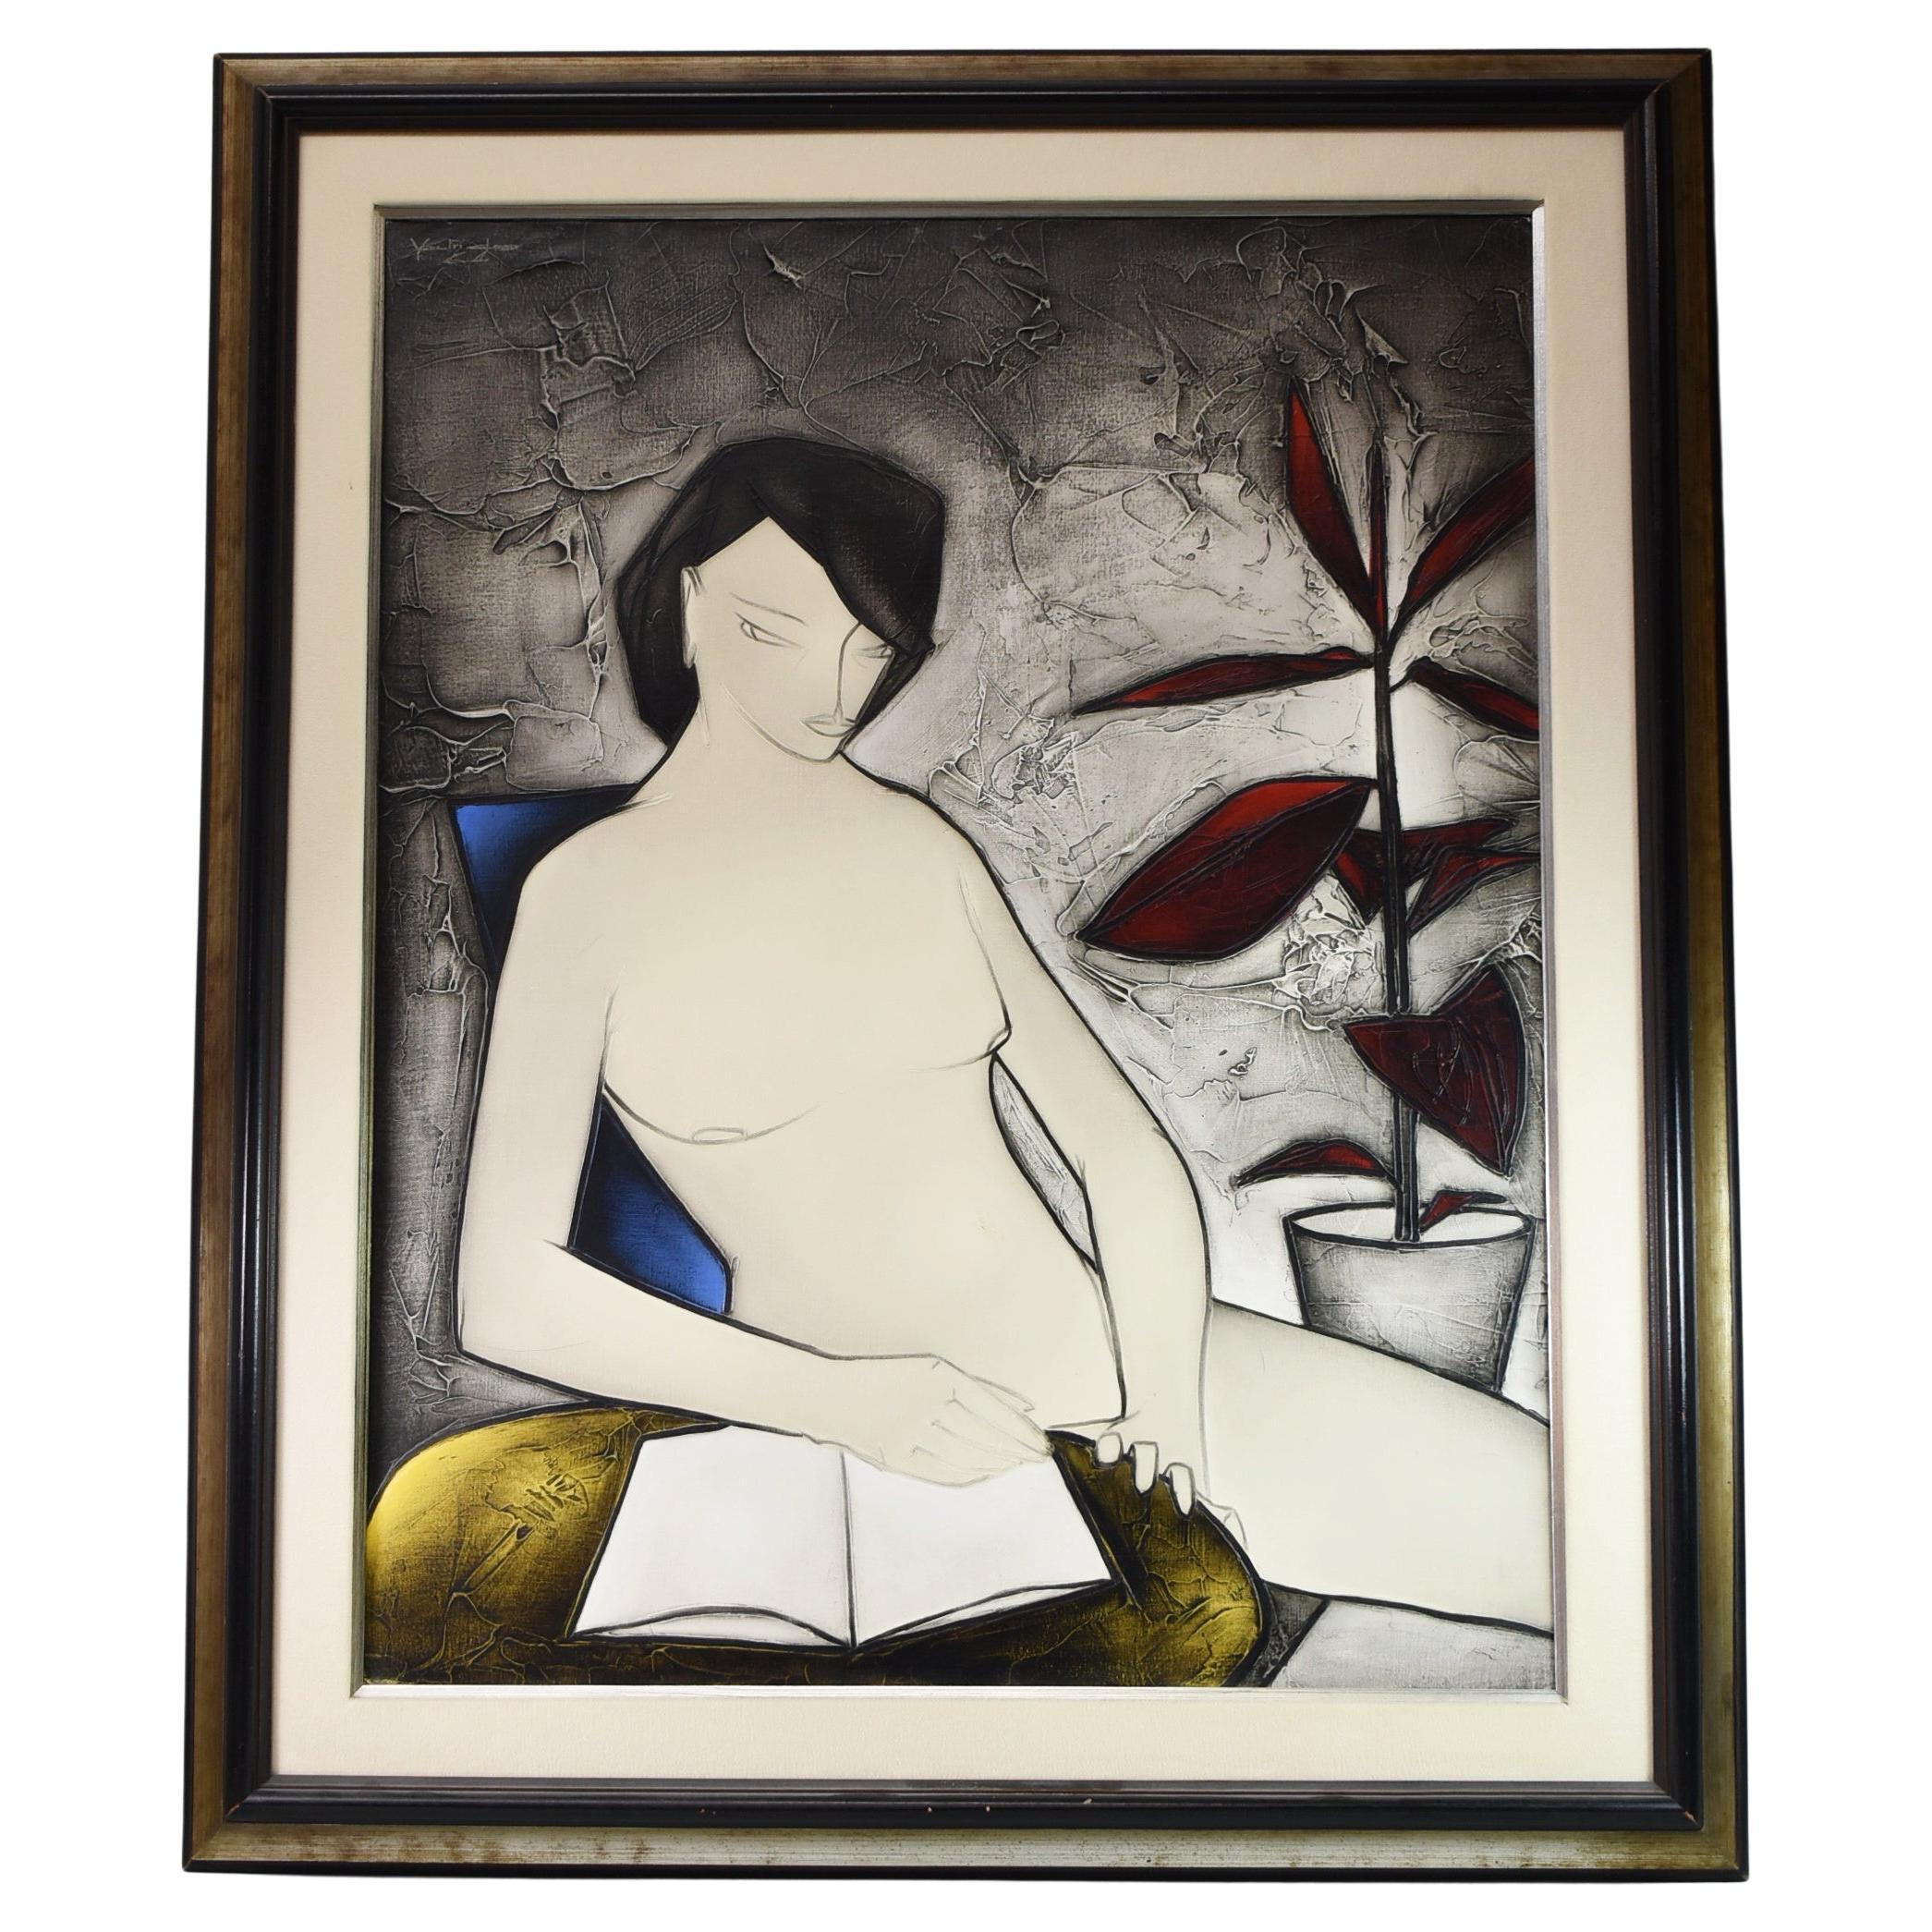 Peinture moderniste d'une artiste française nue féminine, George Yatrides, vers 1964